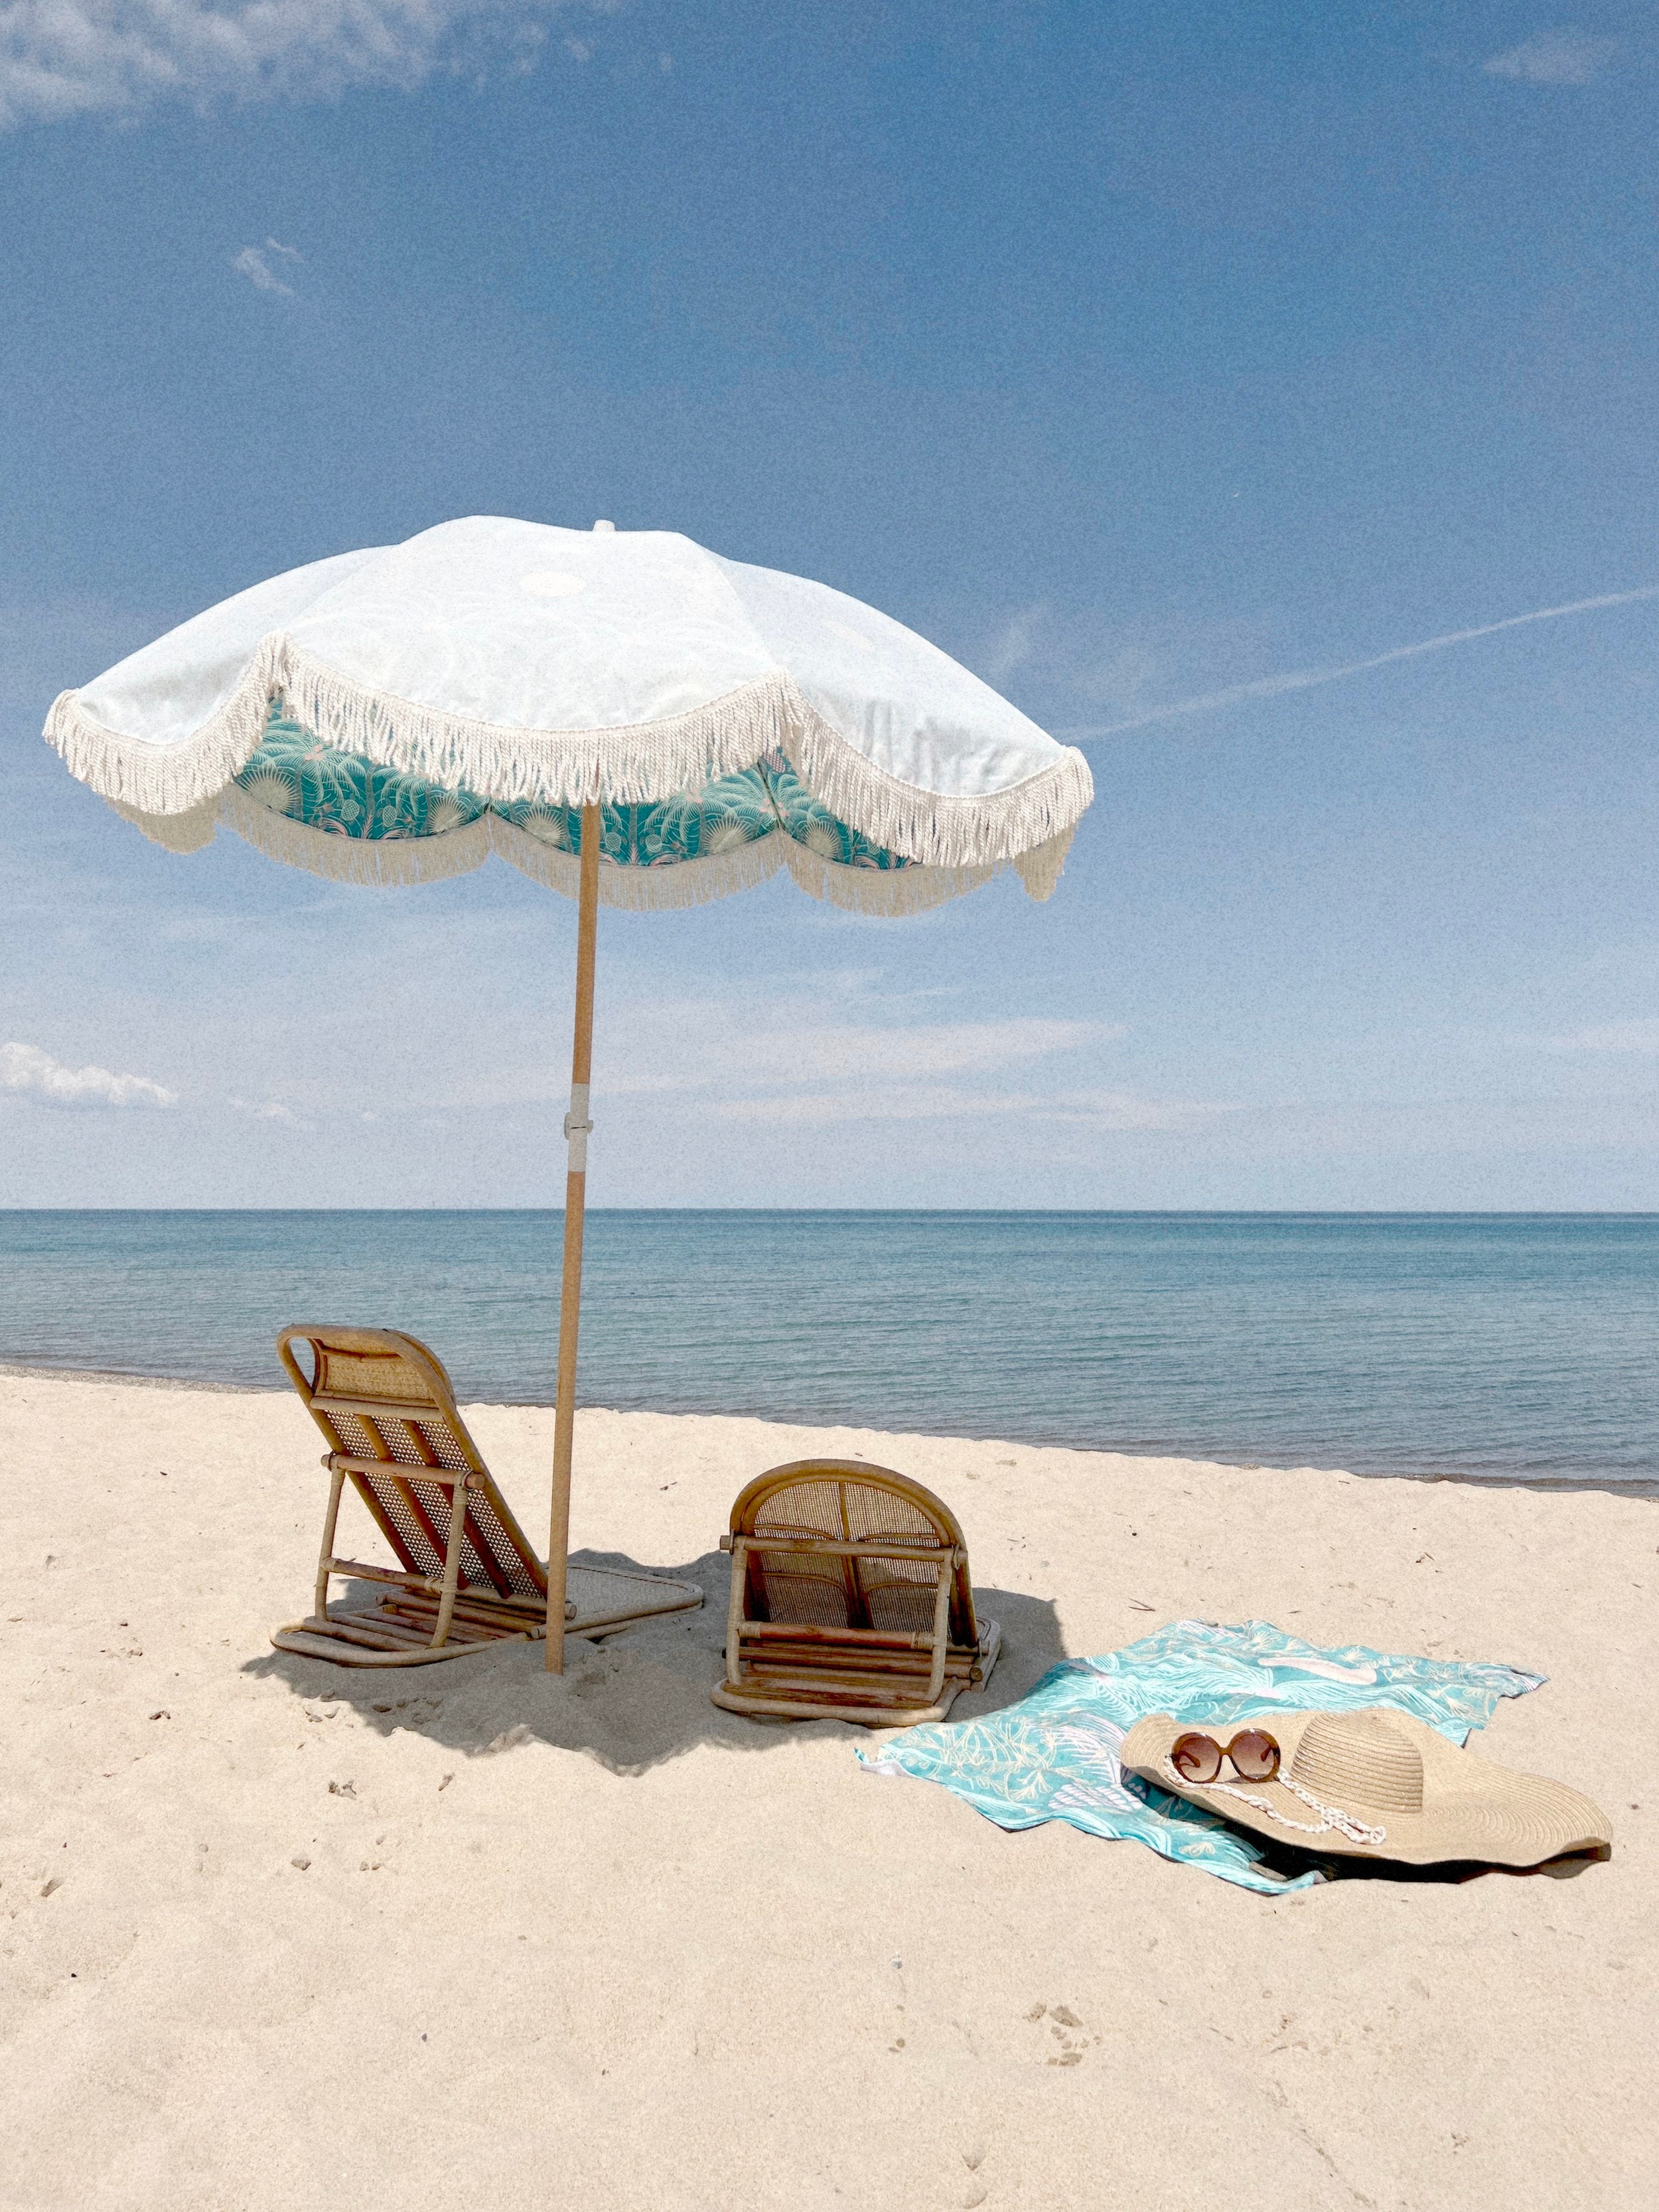 the TULUM Beach Umbrella